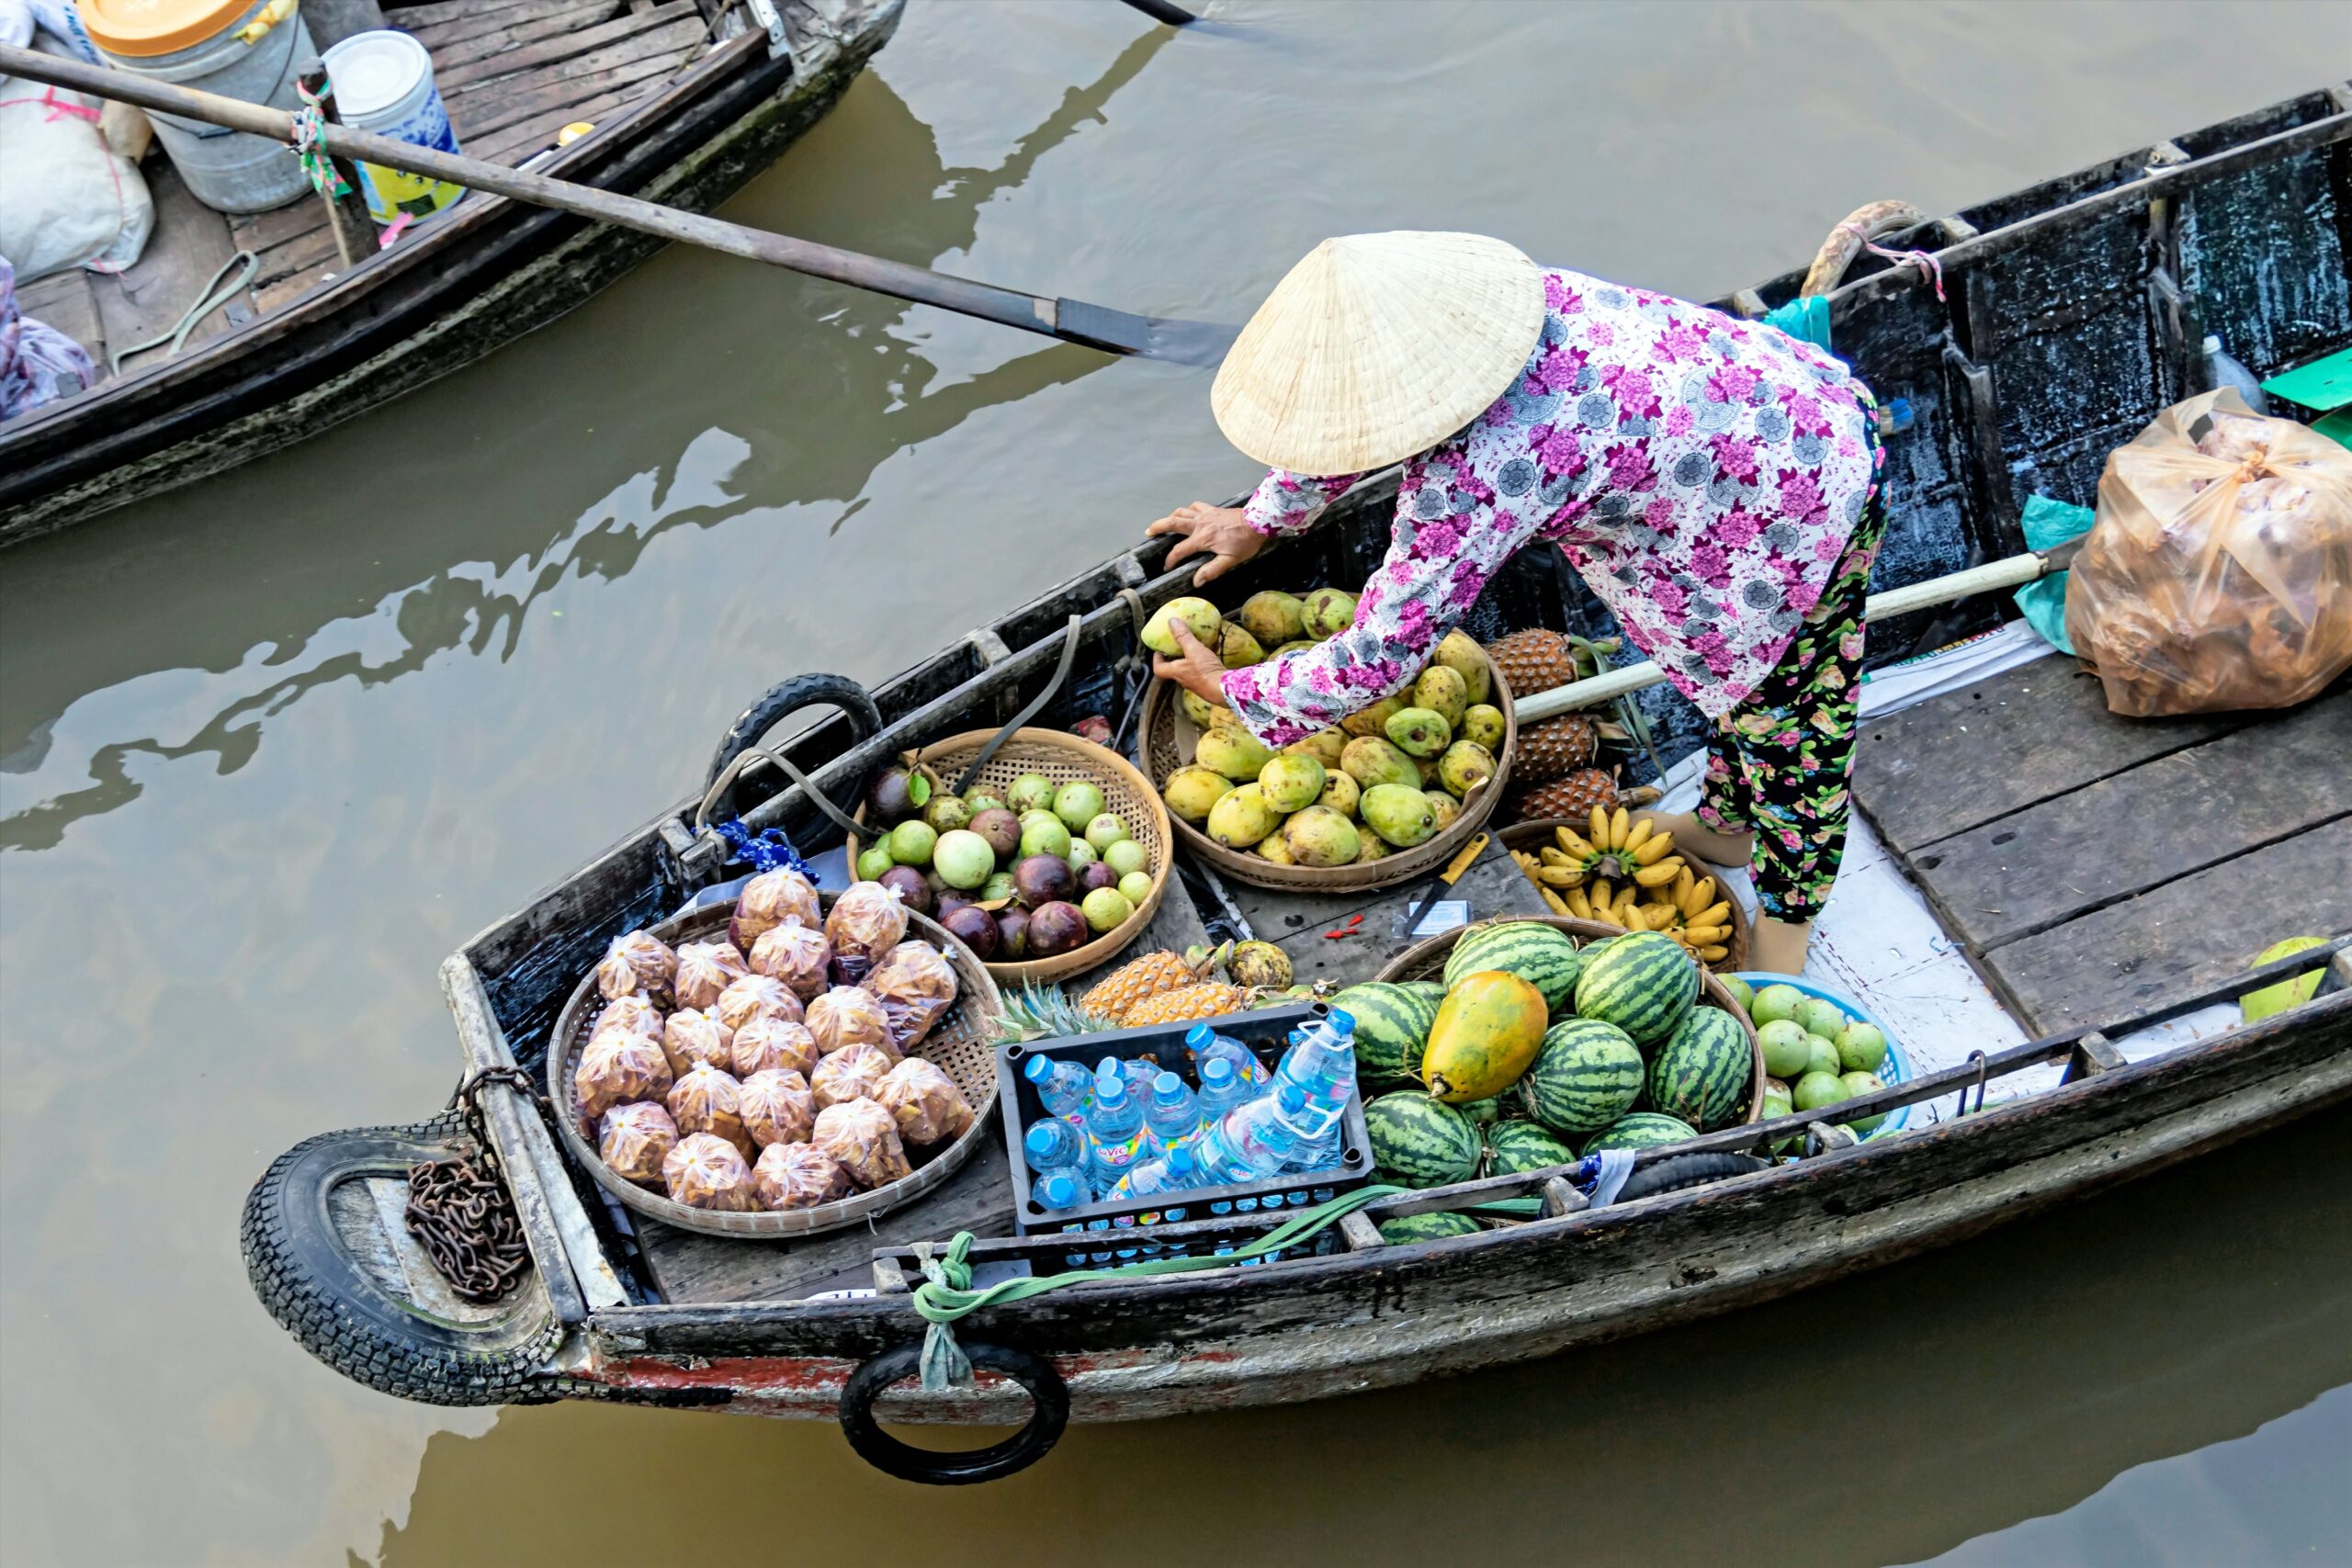 Mujer vietnamita vende aguacates y otras frutas desde su canoa en un mercado flotante del Delta del Mekong, en Vietnam.